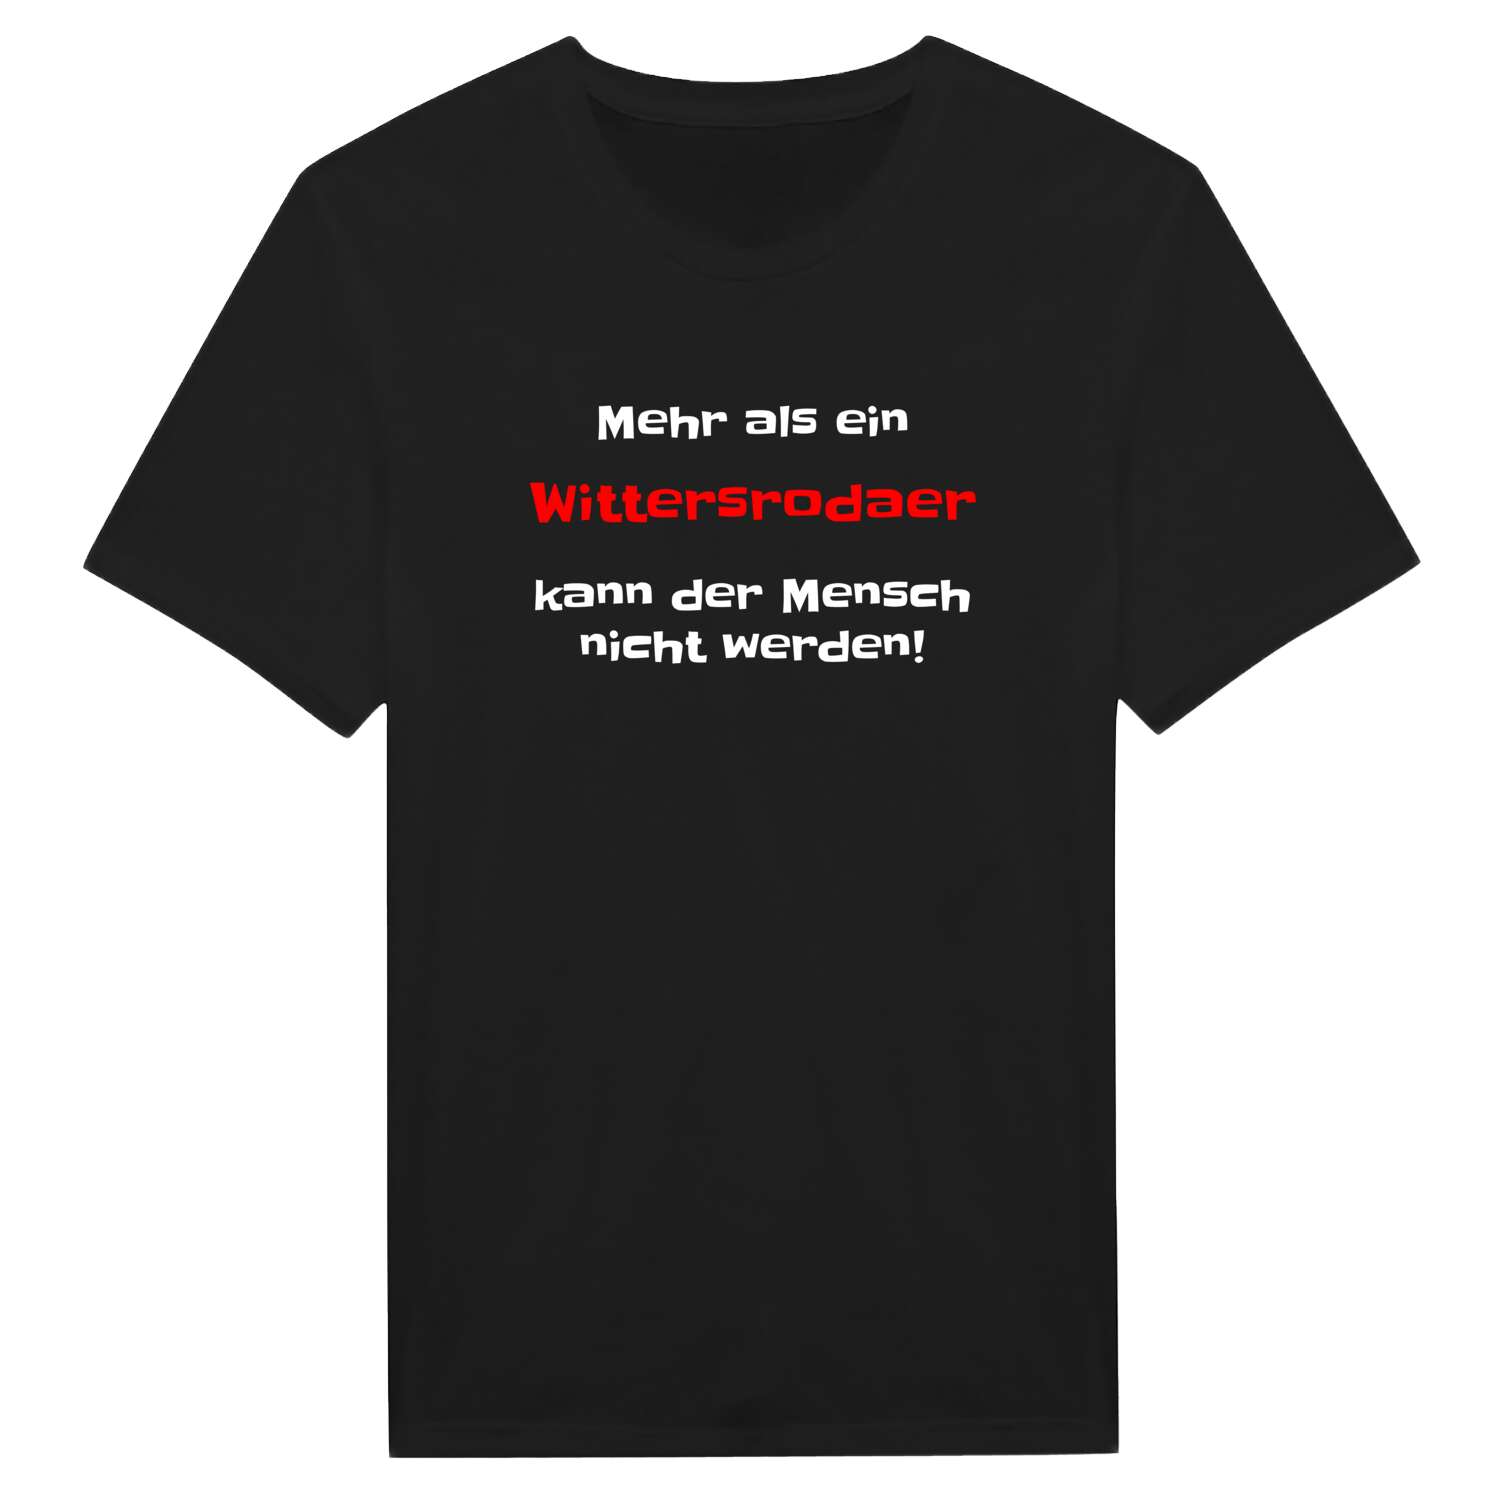 Wittersroda T-Shirt »Mehr als ein«